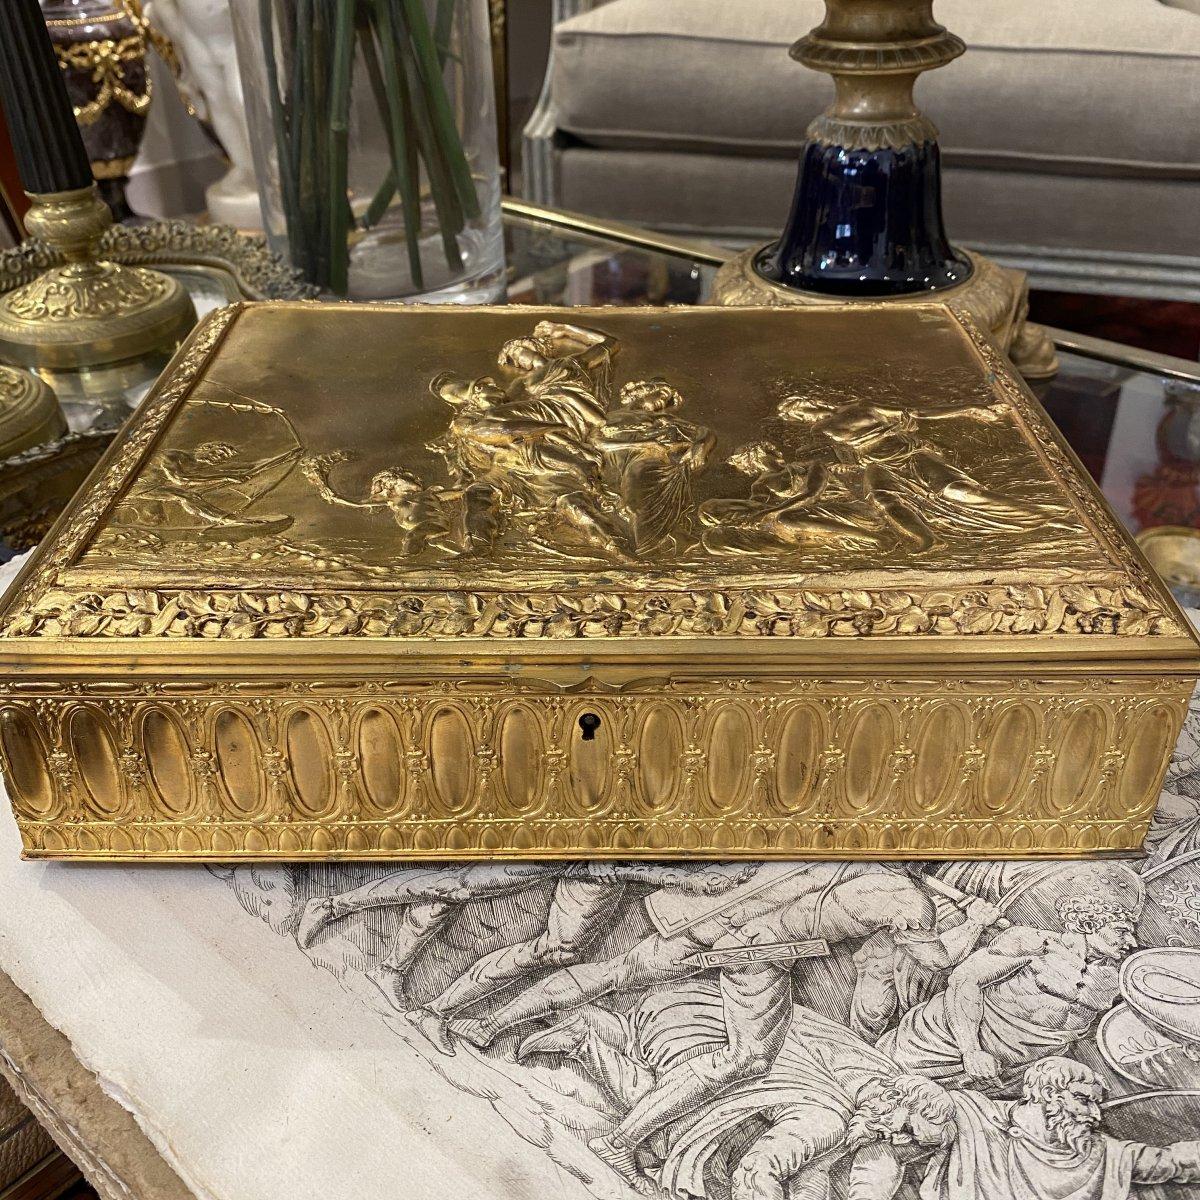 Wir präsentieren Ihnen diese exquisite vergoldete Bronzedose aus der Zeit Napoleons III. Es stellt eine Szene aus der klassischen Antike dar, die das romantische Rendezvous zweier Liebender vor dem Hintergrund einer Frau bei der Ernte auf der